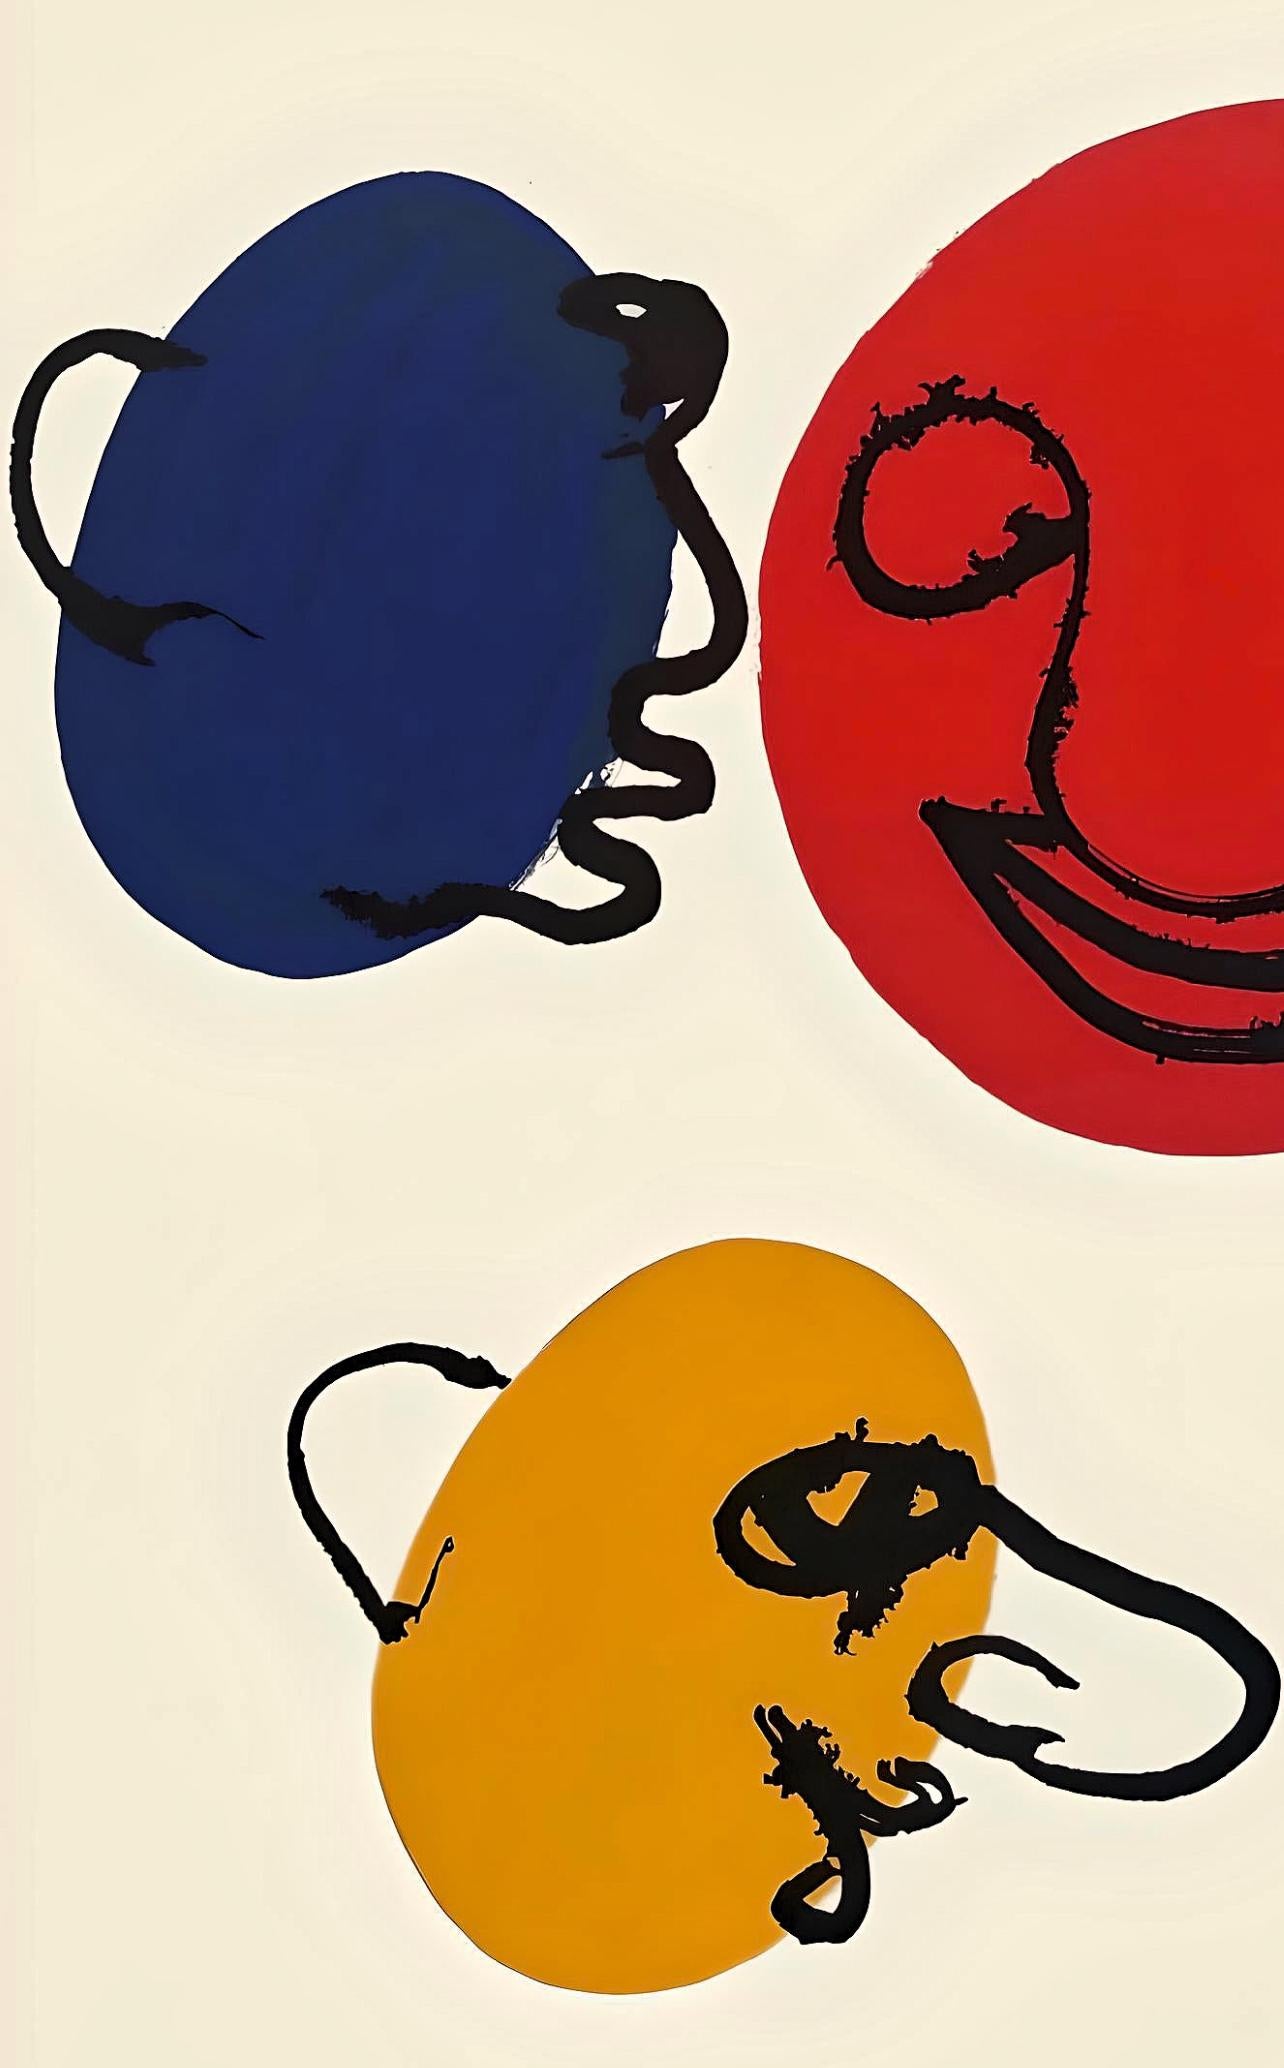 Calder, Composition, Derrière le miroir (after) - Modern Print by Alexander Calder